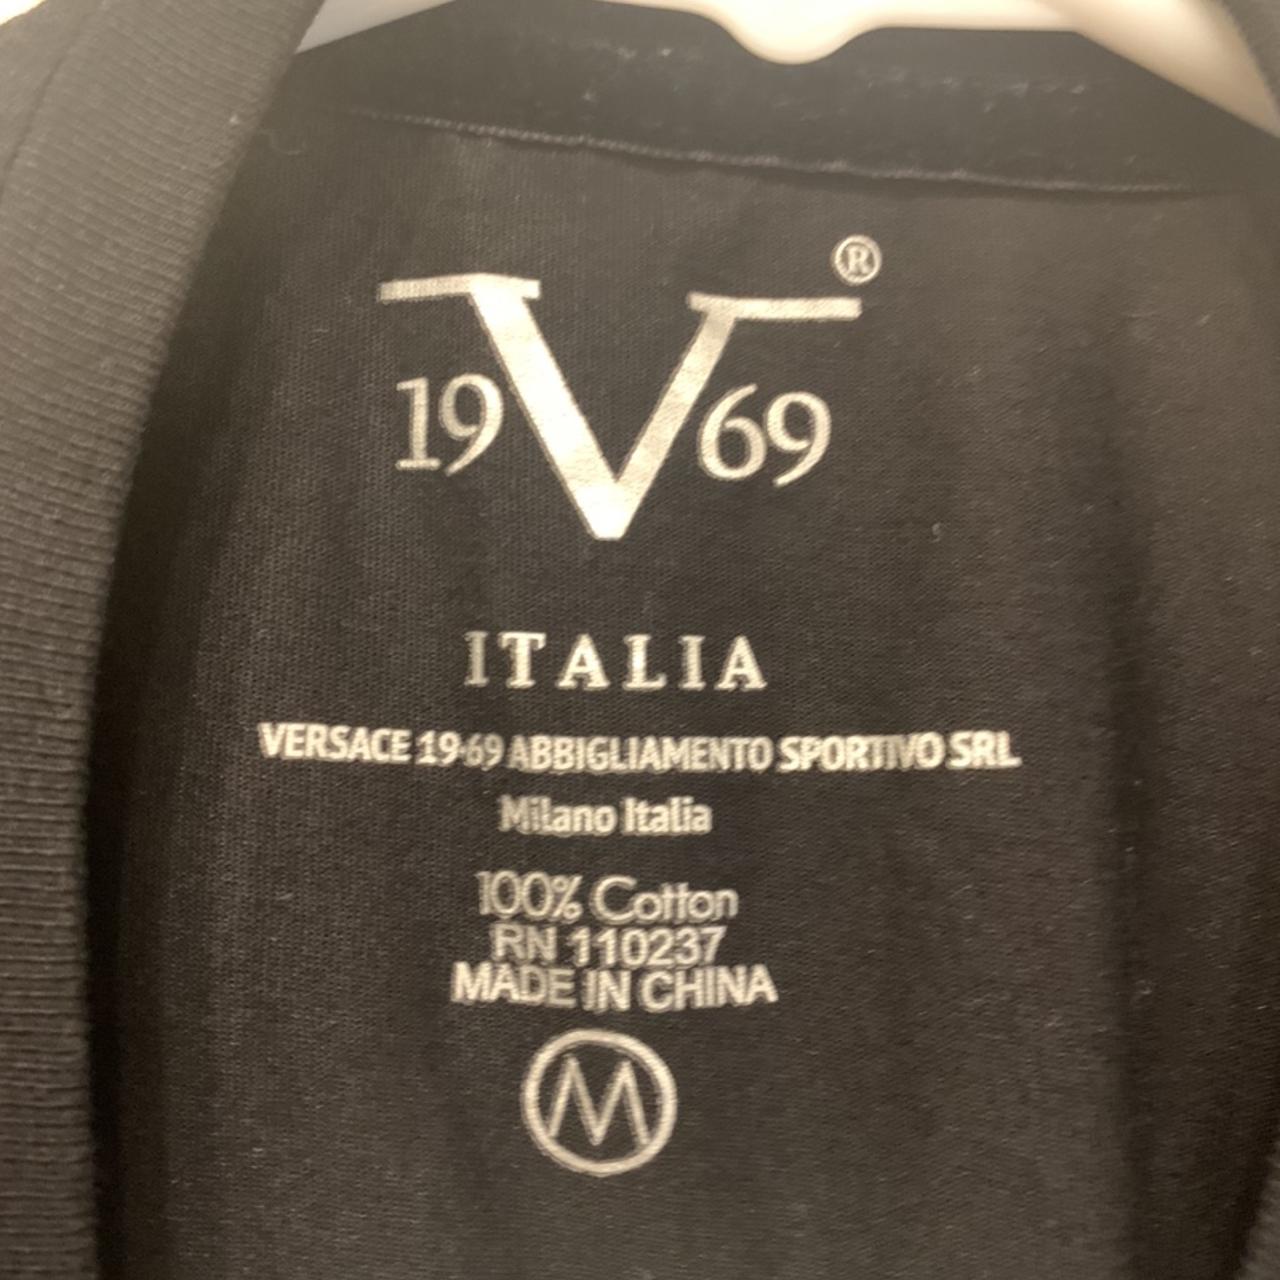 Versace 19.69 Abbigliamento Sportivo SRL Milano Italia, good used condition.